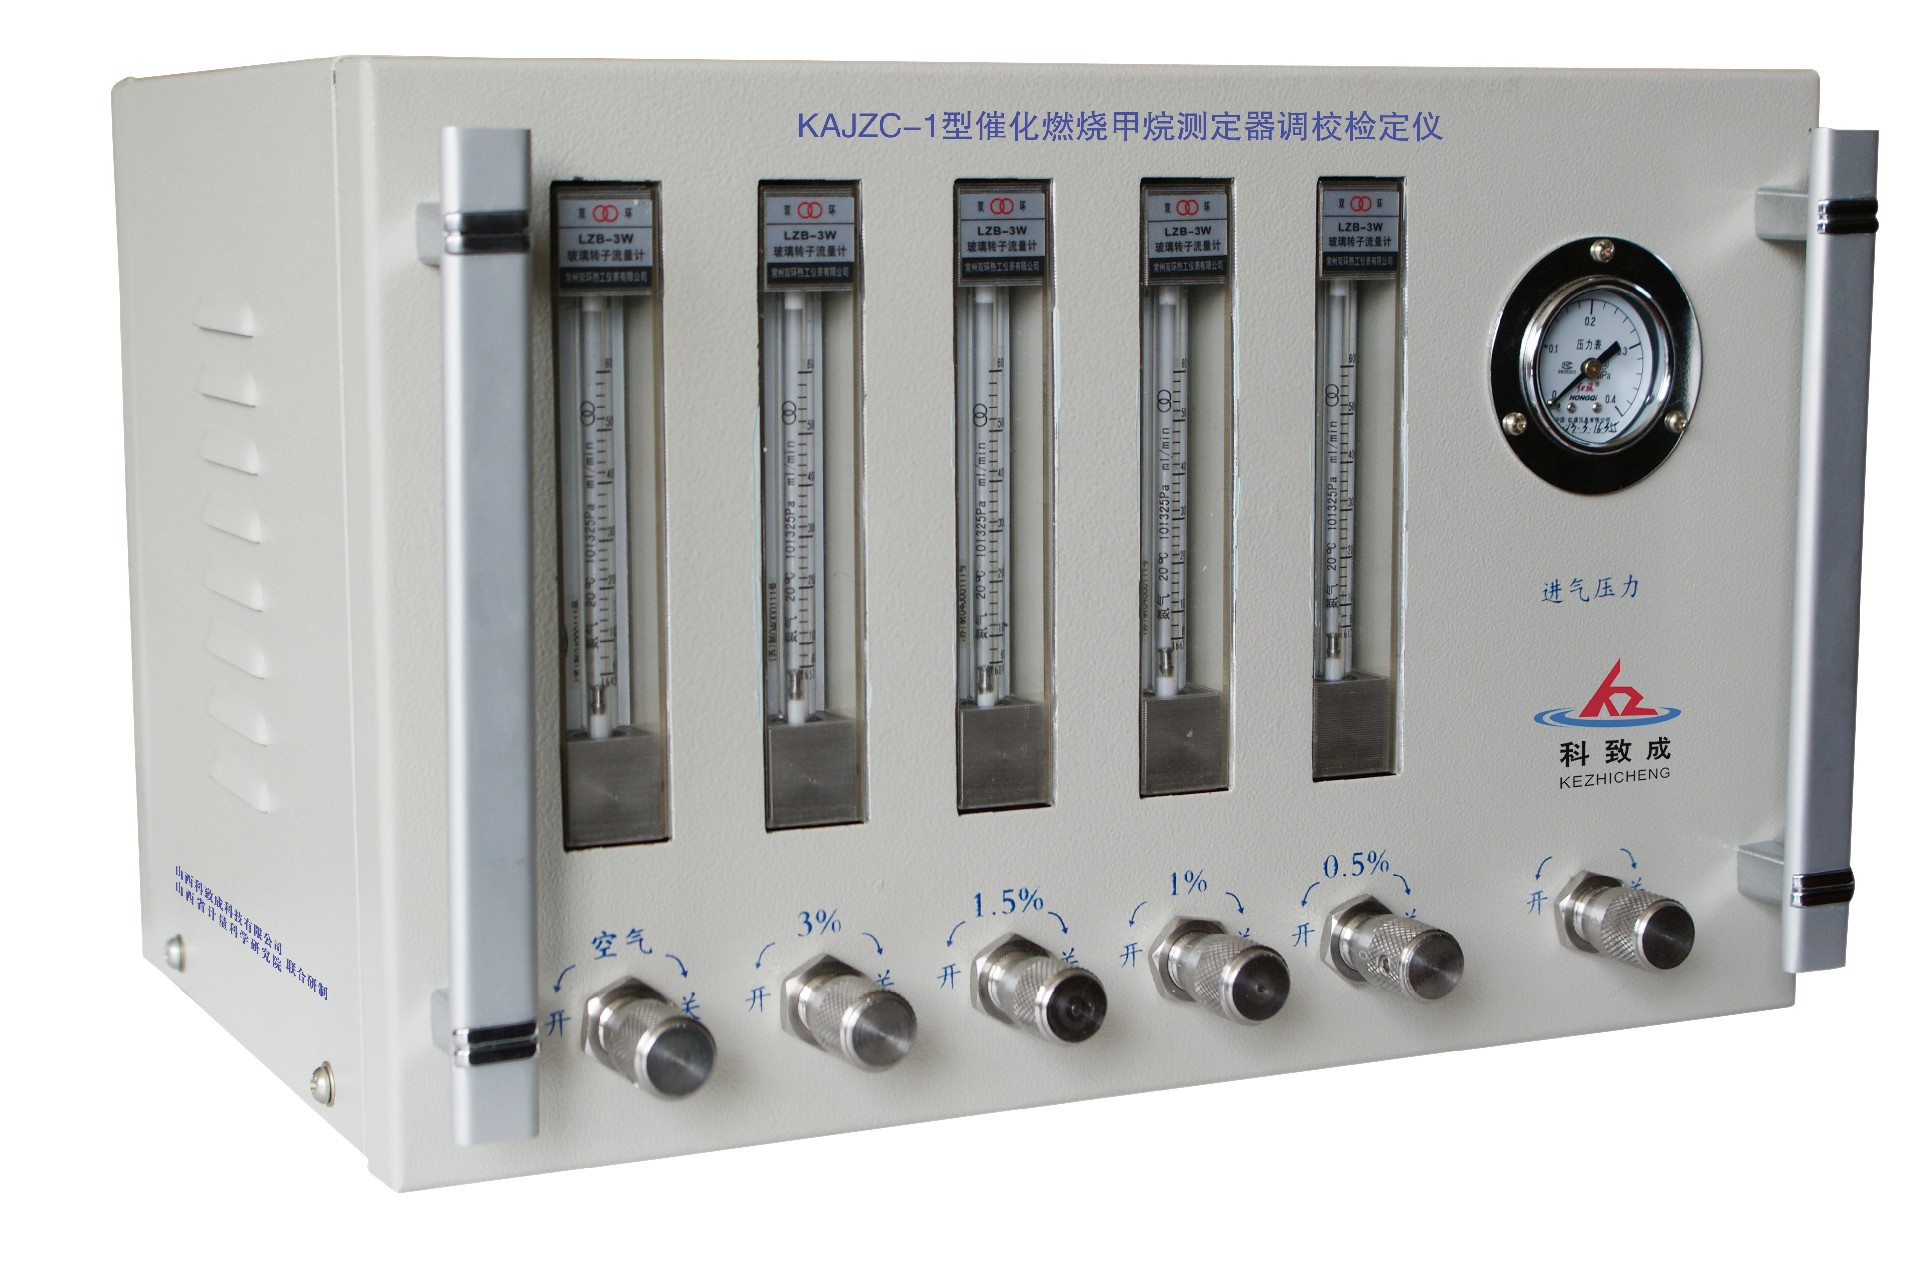 七台河KAJZC-1型催化燃烧甲烷测定器调校检定仪